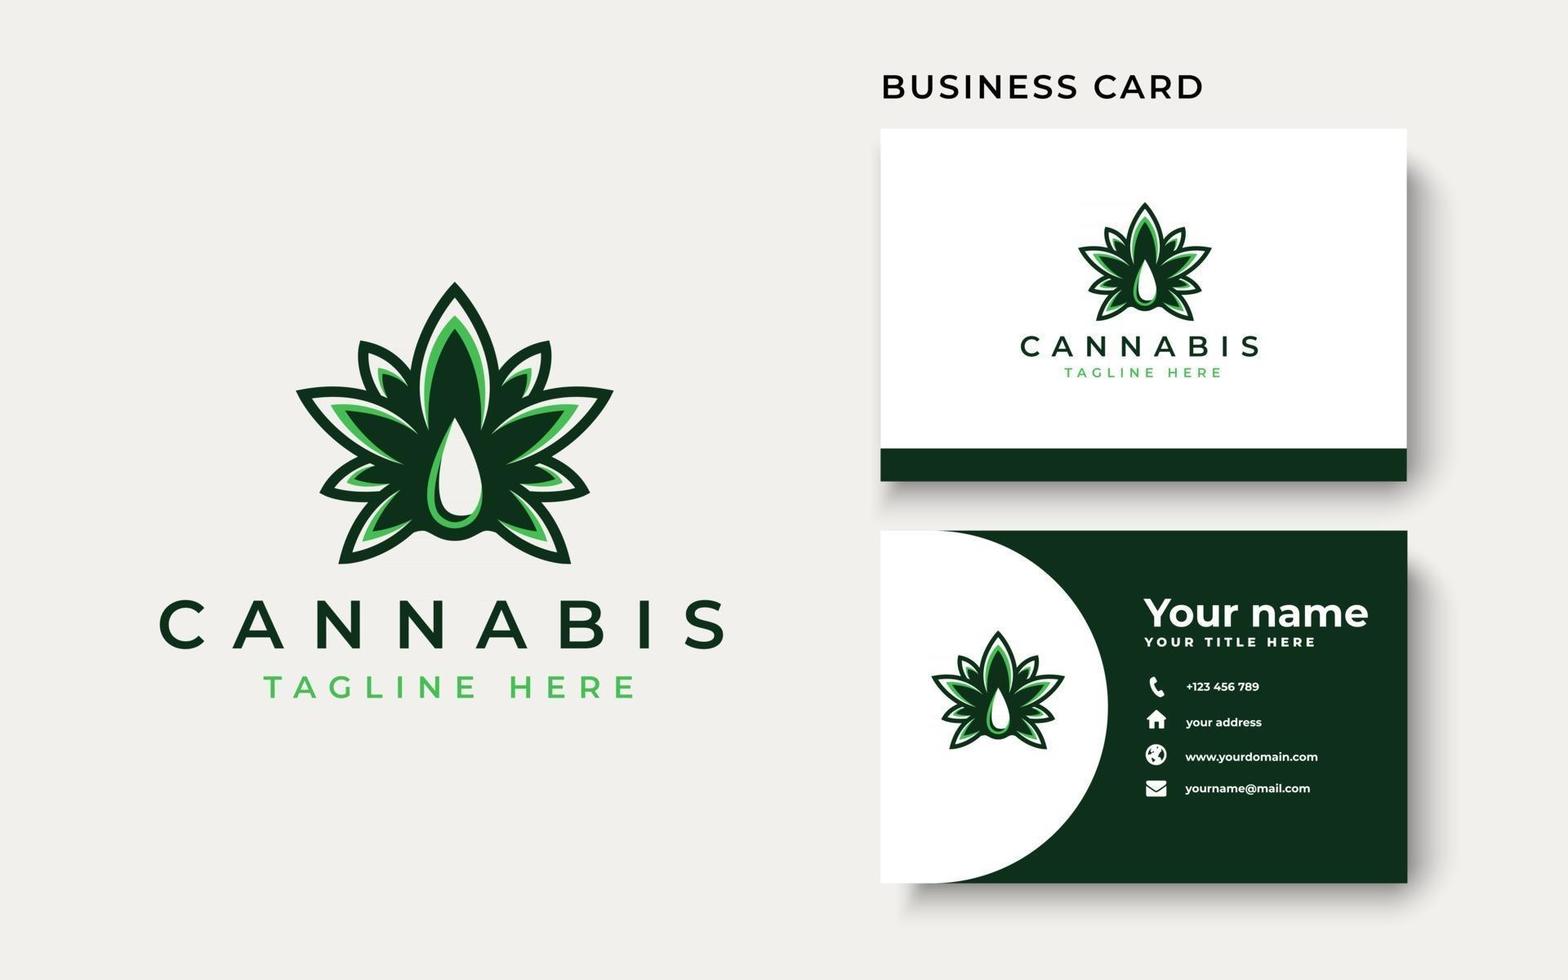 modello di logo foglia di cannabis. illustrazione vettoriale